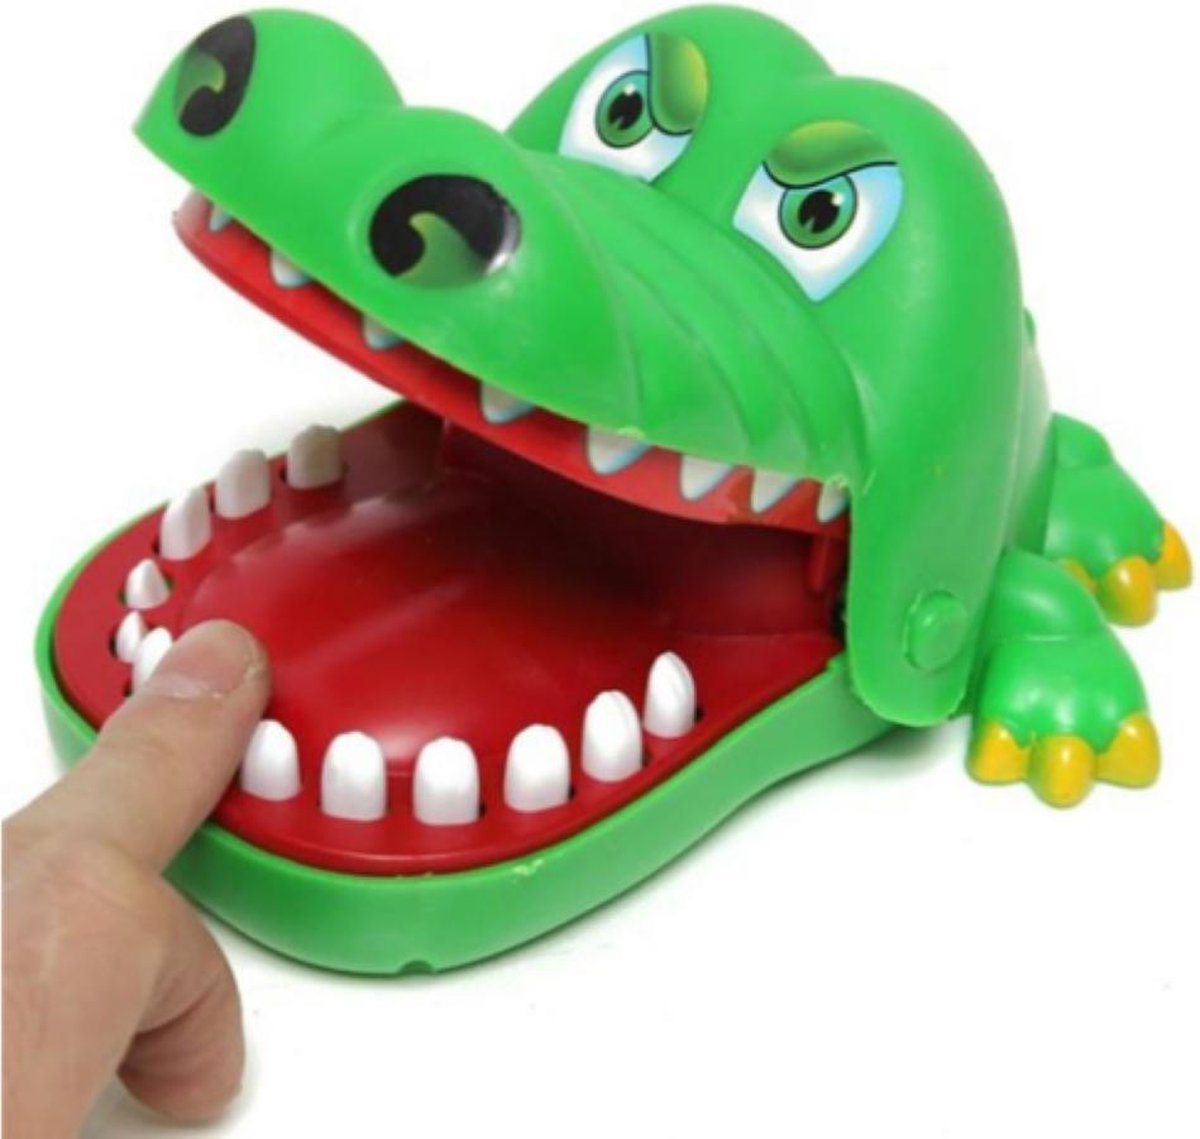 Bijtende krokodil - kinderspel - shotspel - drankspel - groene krokodil - Furn4All